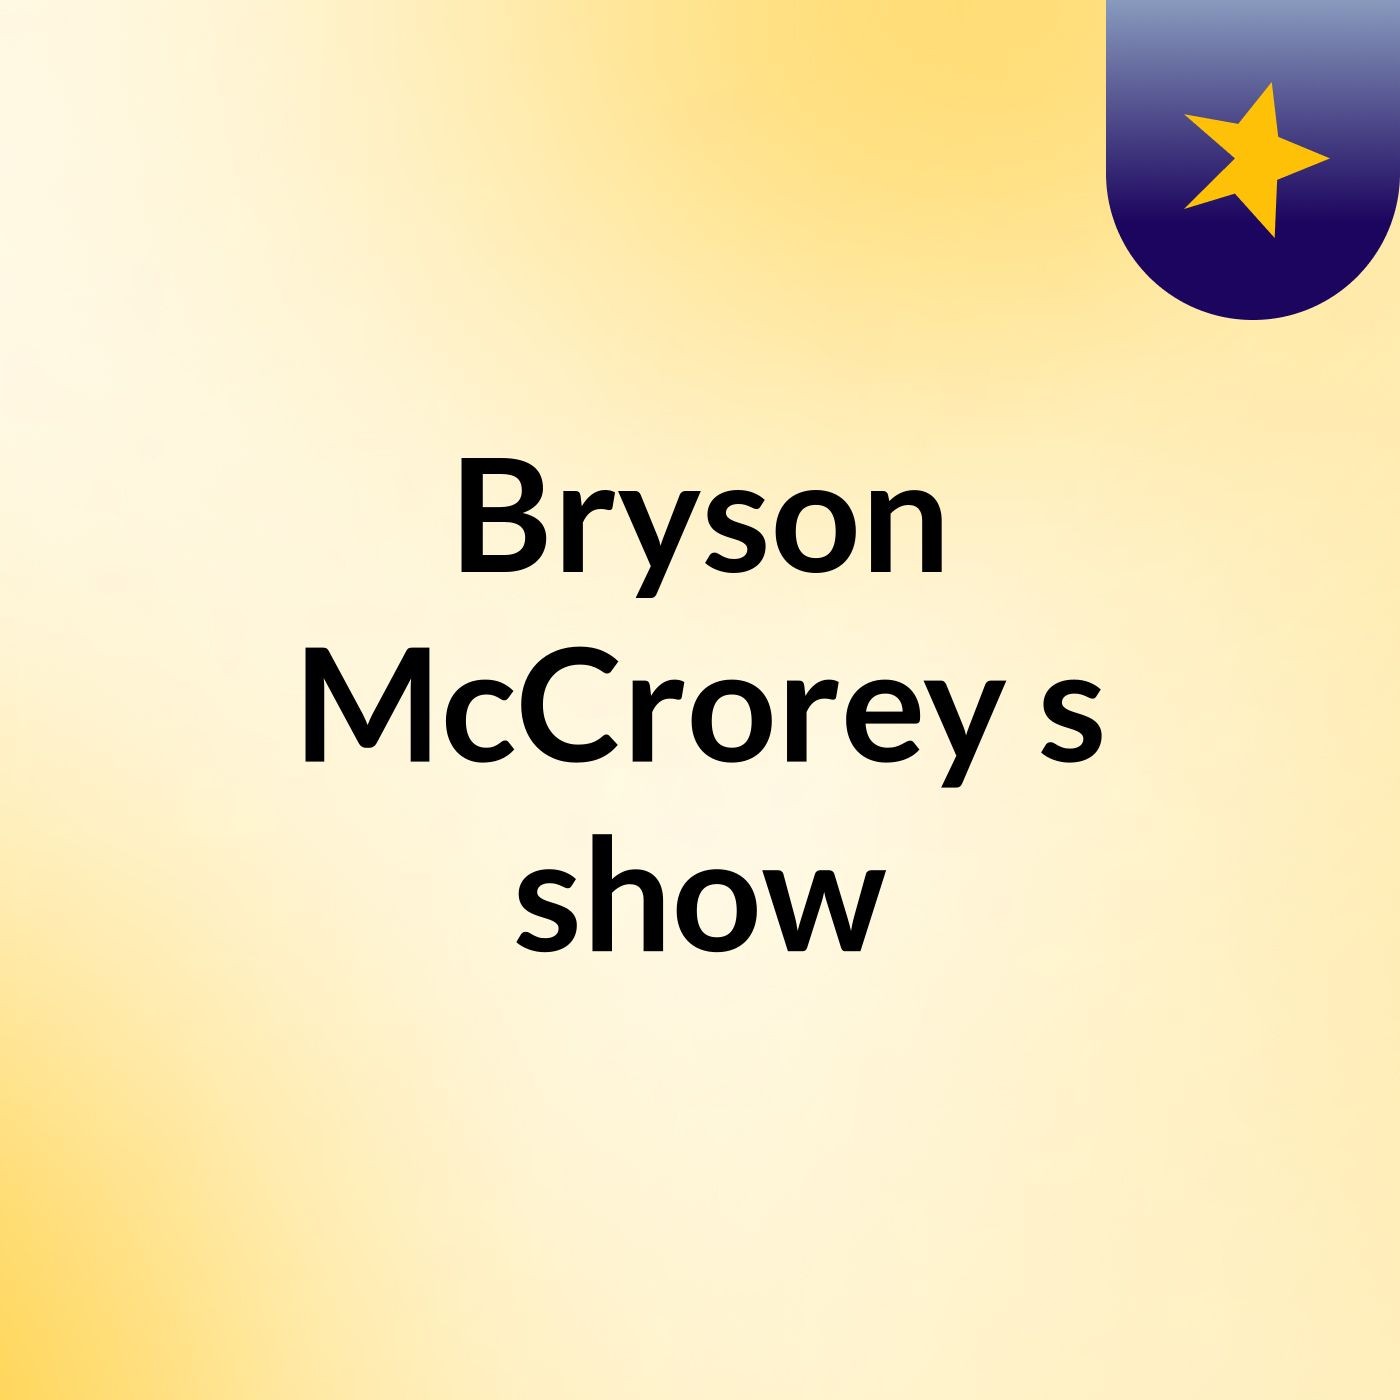 Bryson McCrorey's show